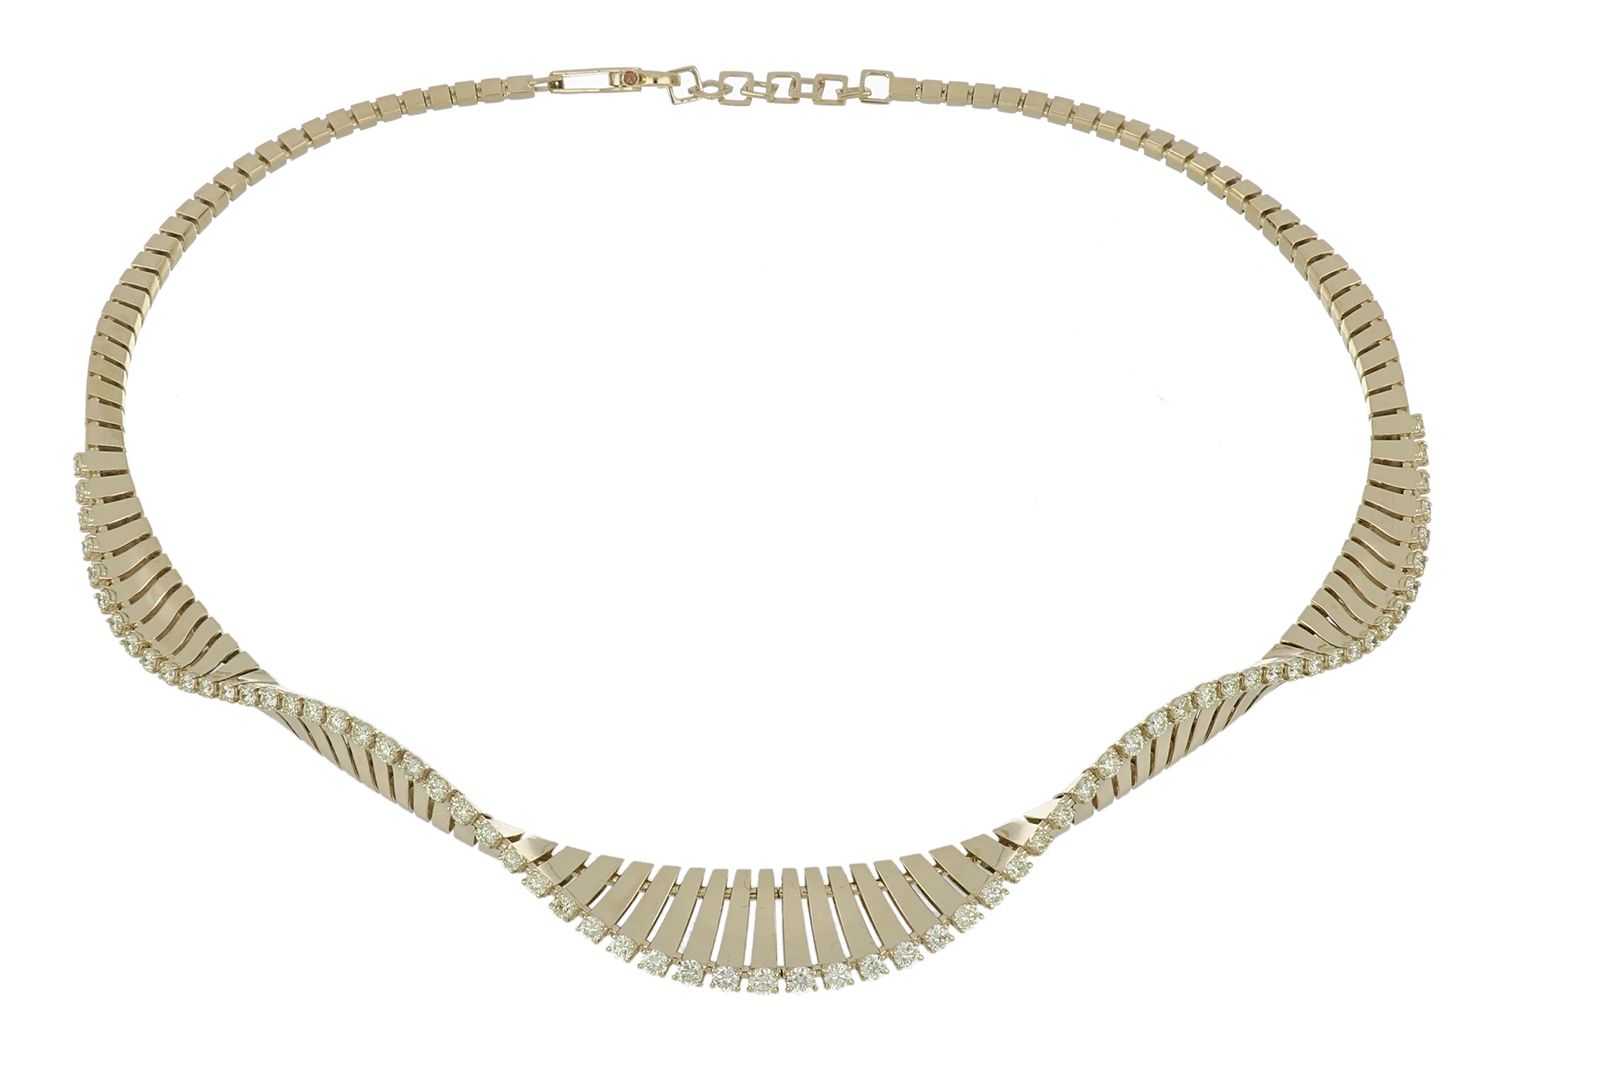 FerriFirenze Vito 18k yellow gold choker necklace with 3.20 carats of champagne diamonds